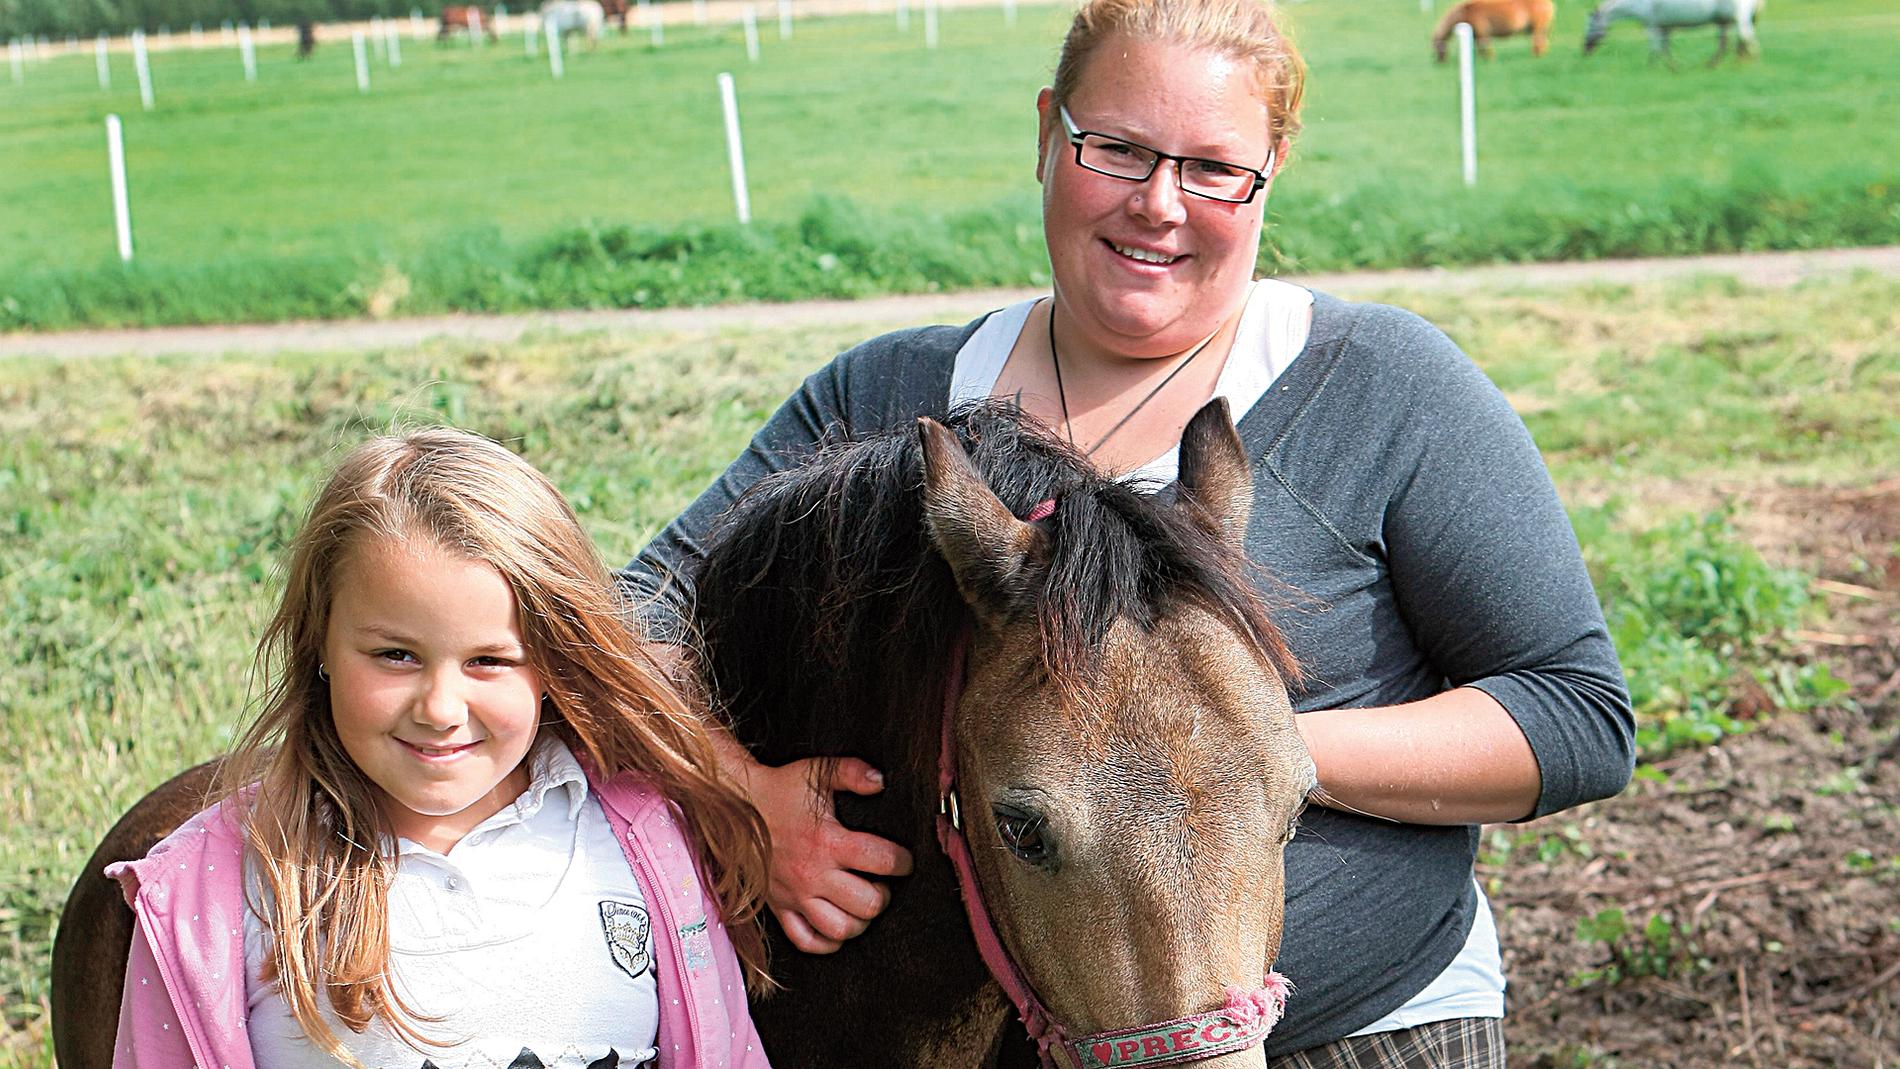 Erica och dottern Amelia är lika på många sätt – båda är självständiga, glada och älskar hästar. Här är de tillsammans med ponnyn Mulle, en av familjens hästar.